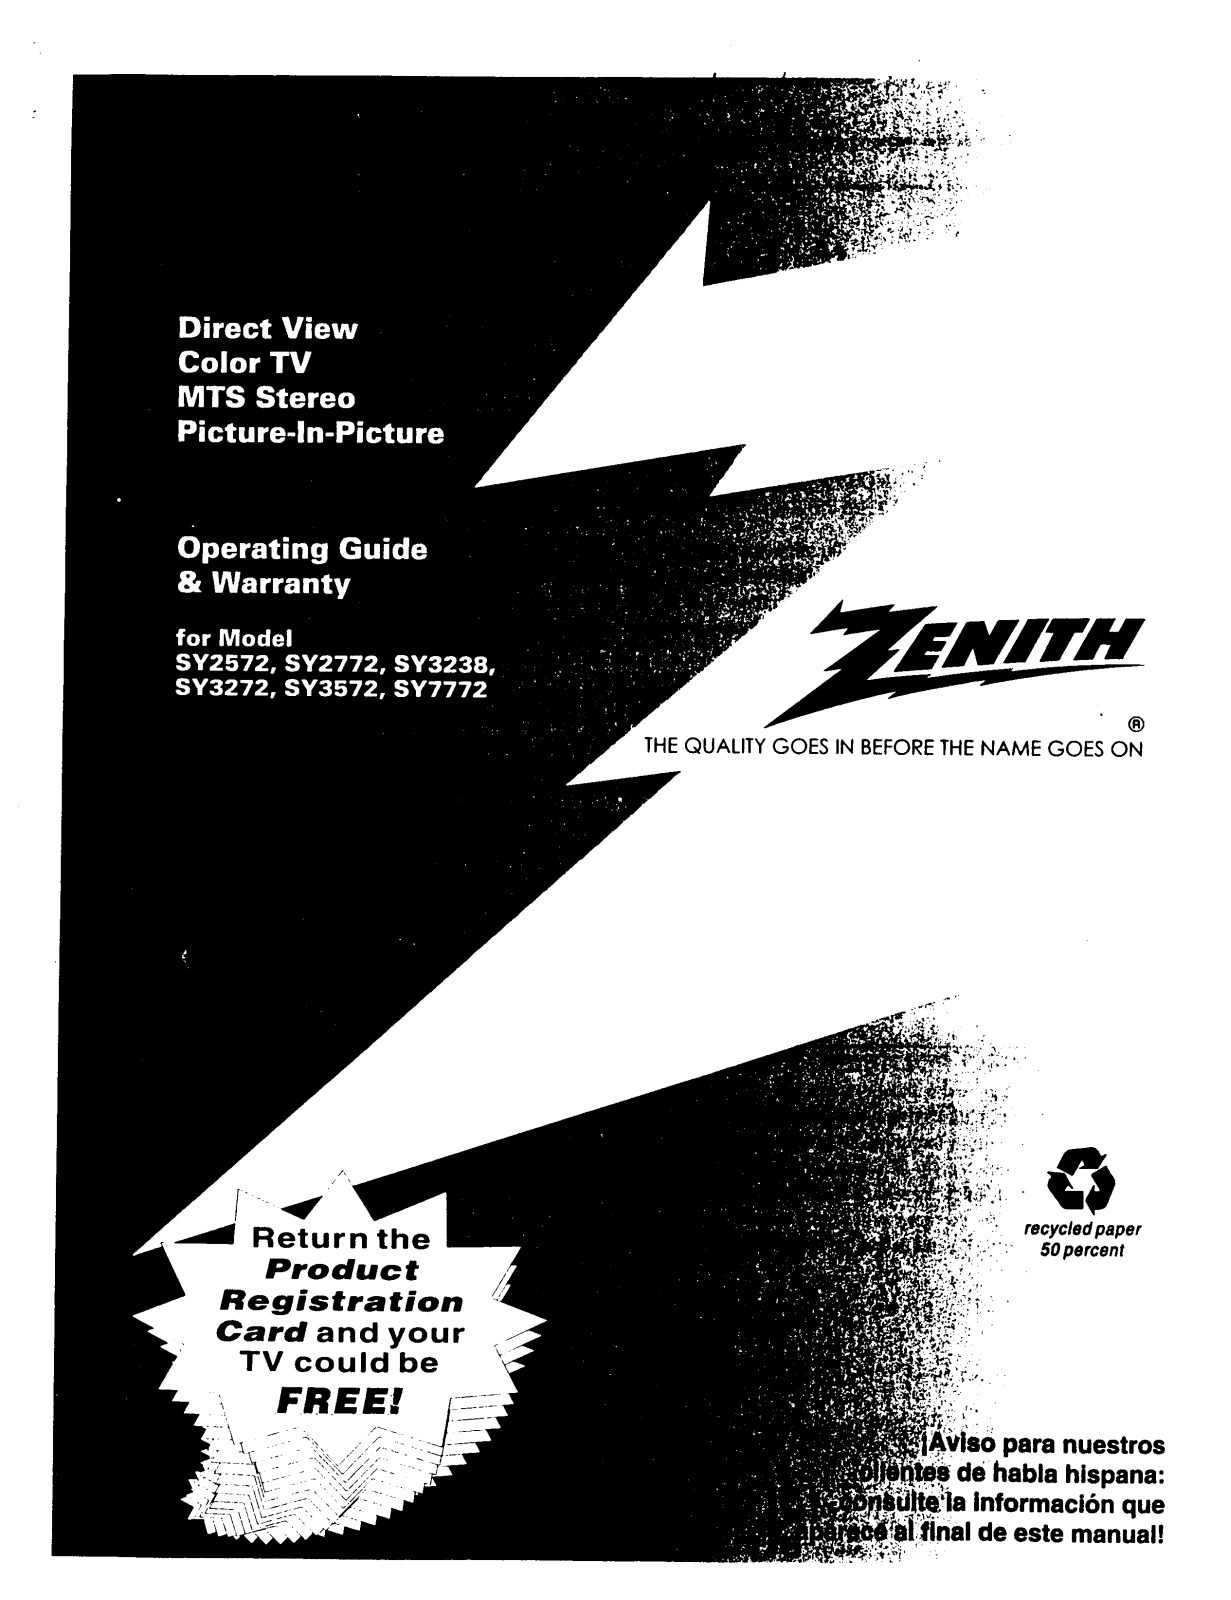 Zenith SY2772DT, SY3272DT, SY3238RK, SY3238MK, SY2572DT Owner’s Manual